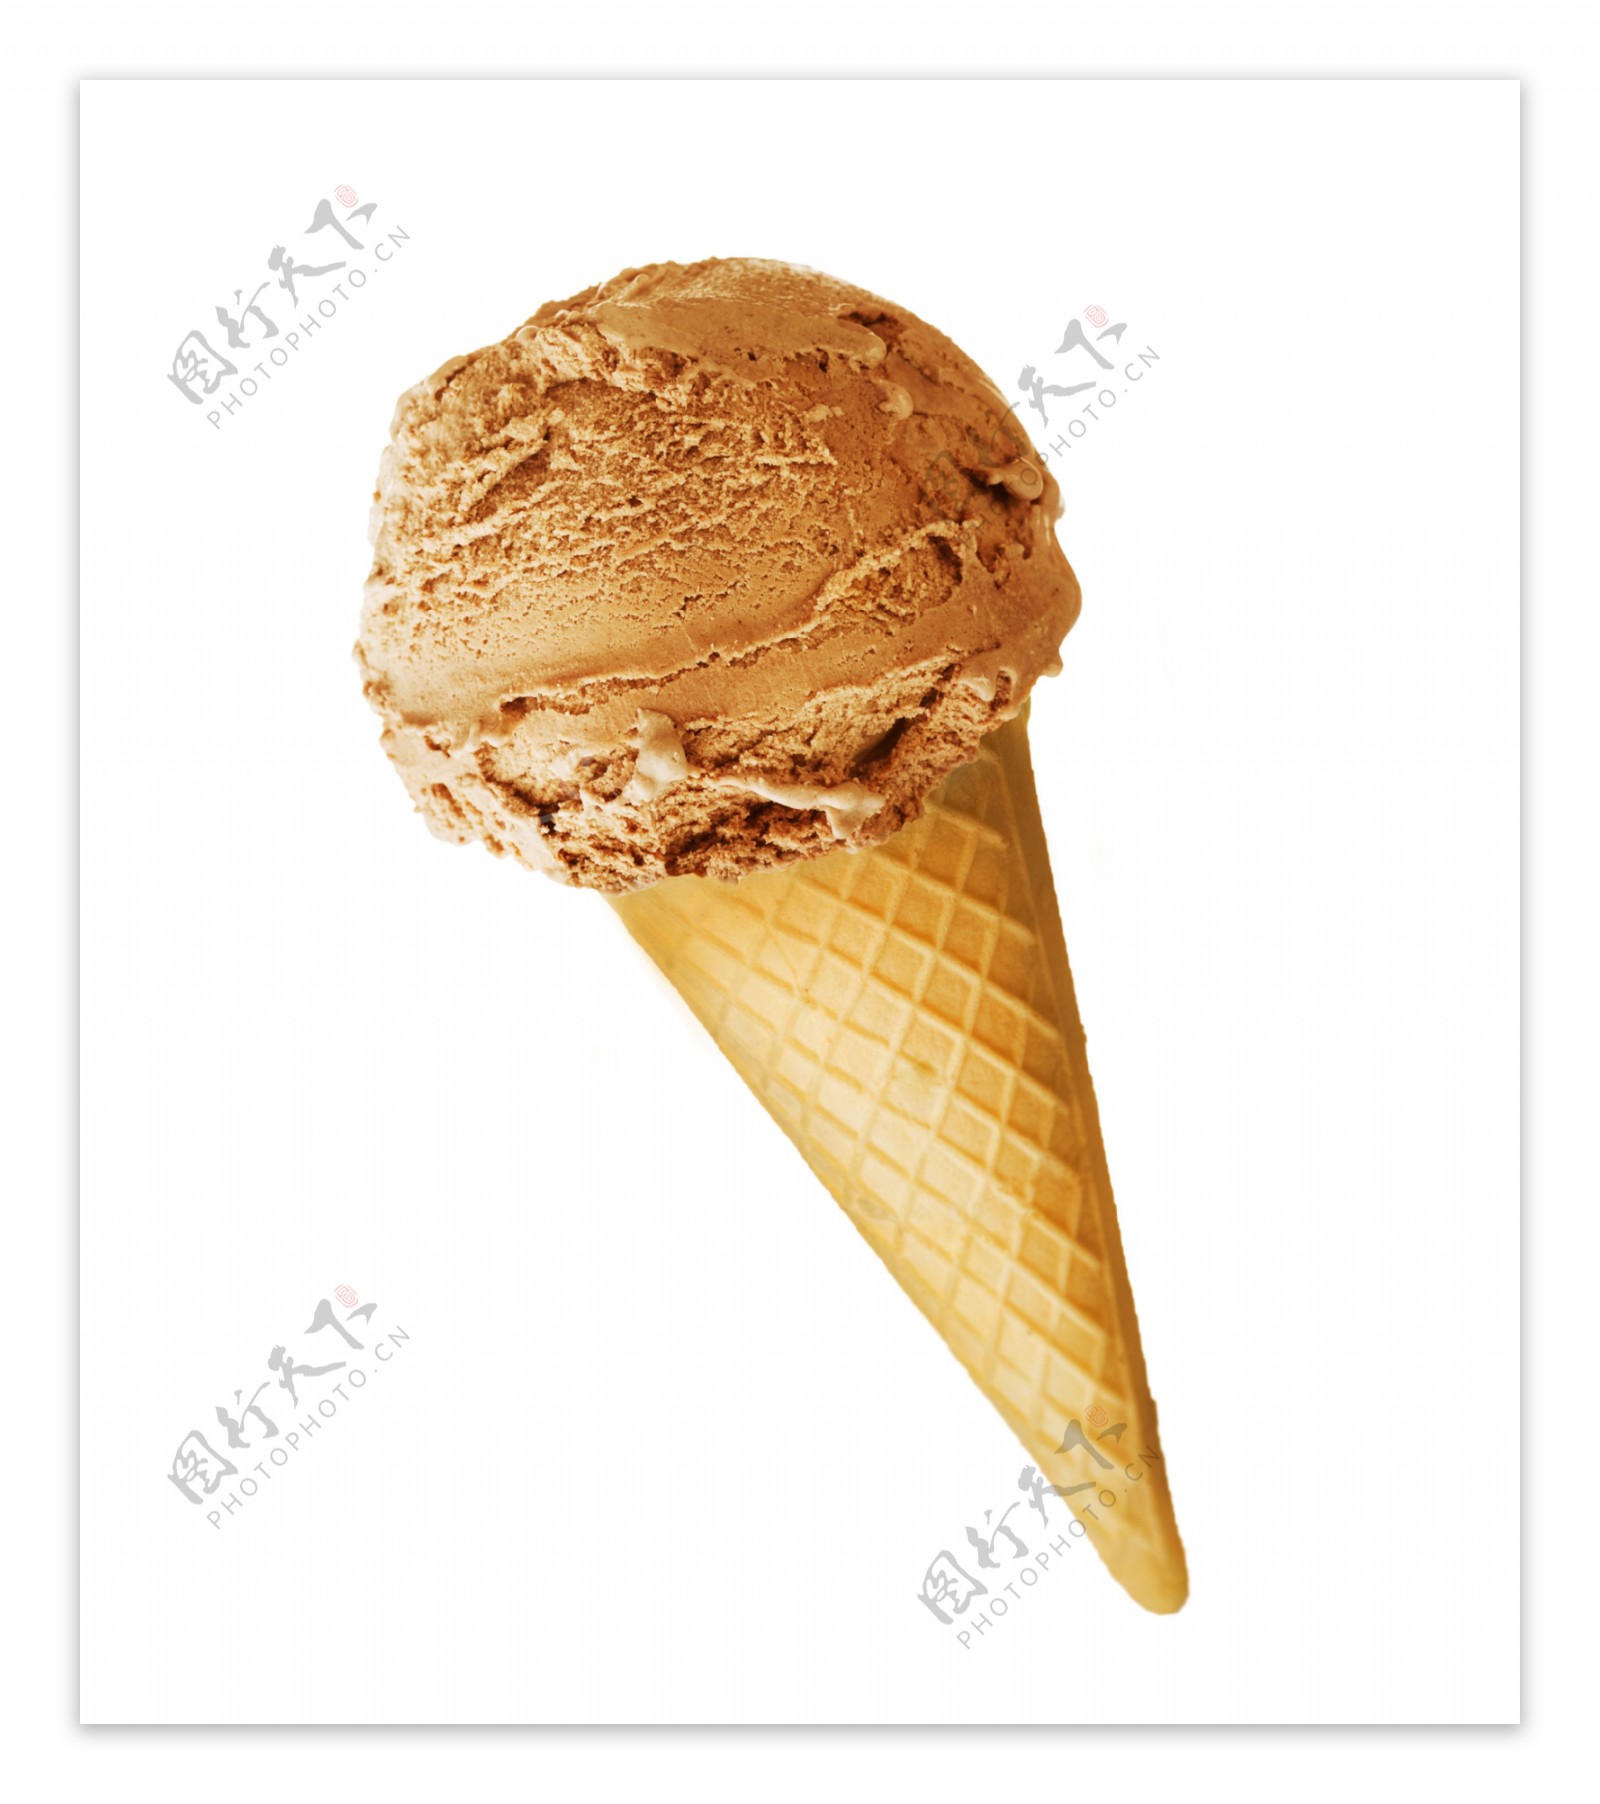 巧克力冰淇淋摄影图片